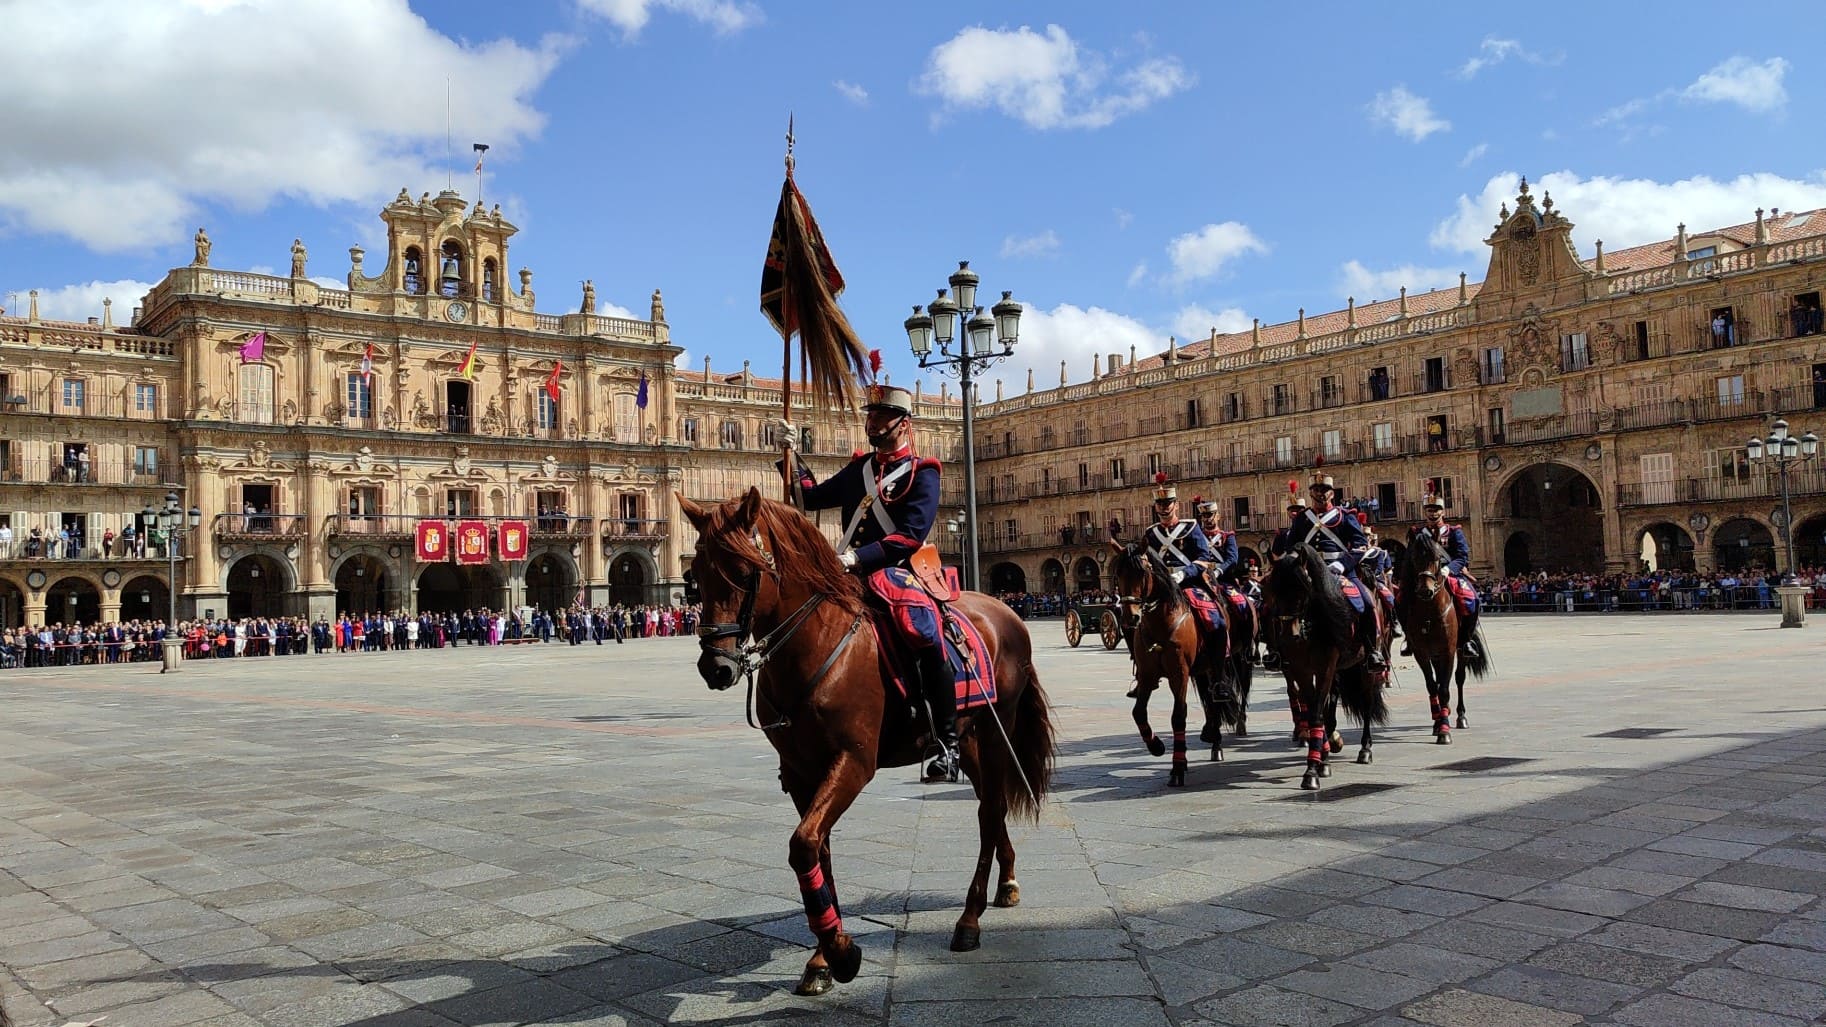 Fotografía de la parada militar que tuvo lugar el 17 de septiembre durante el ejercicio Salamanca 2023